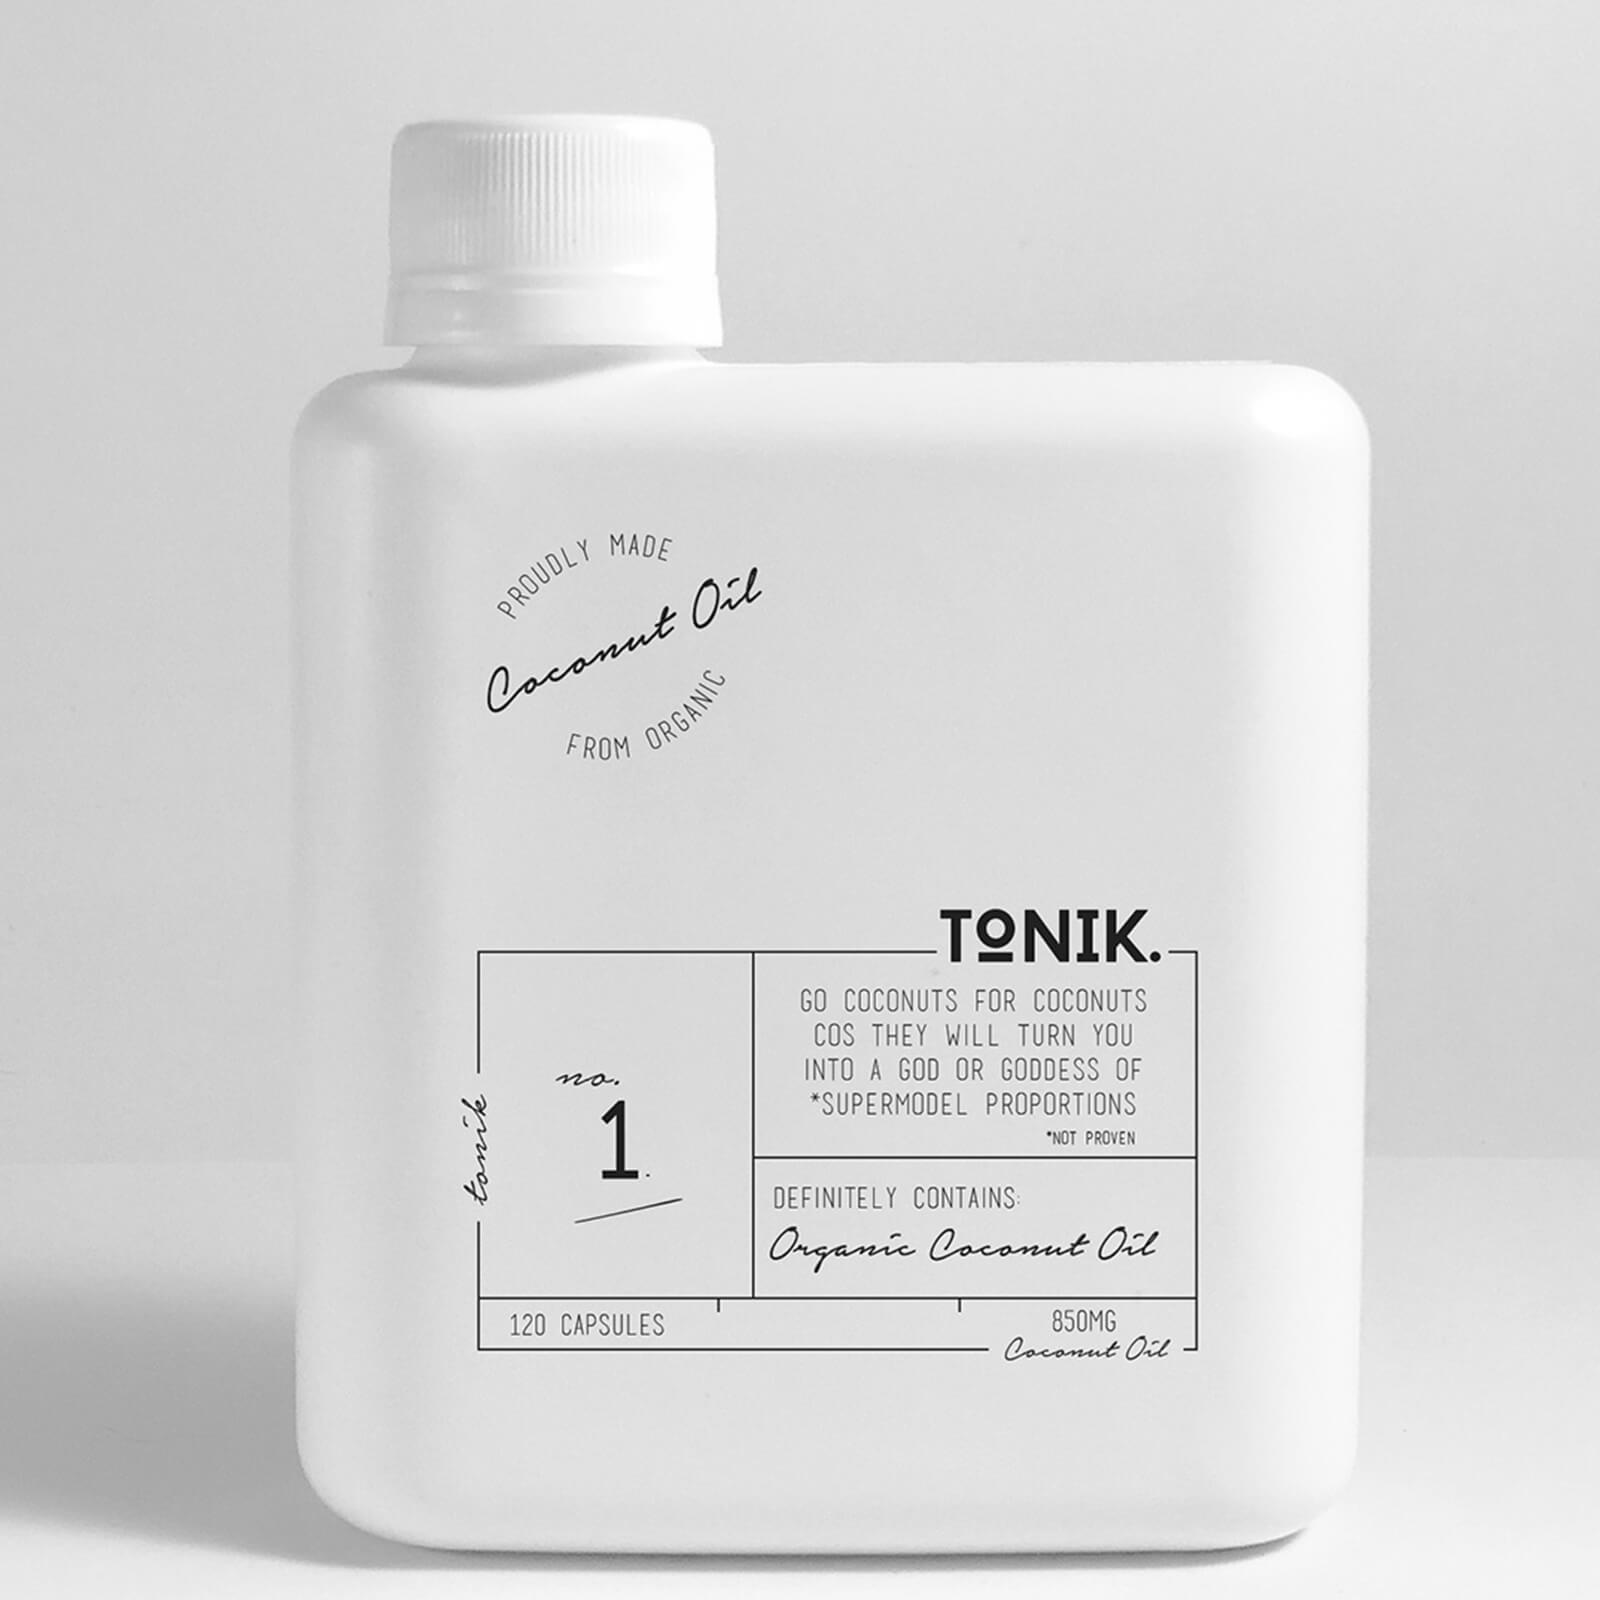 THE TONIK Organic Coconut Oil Capsules